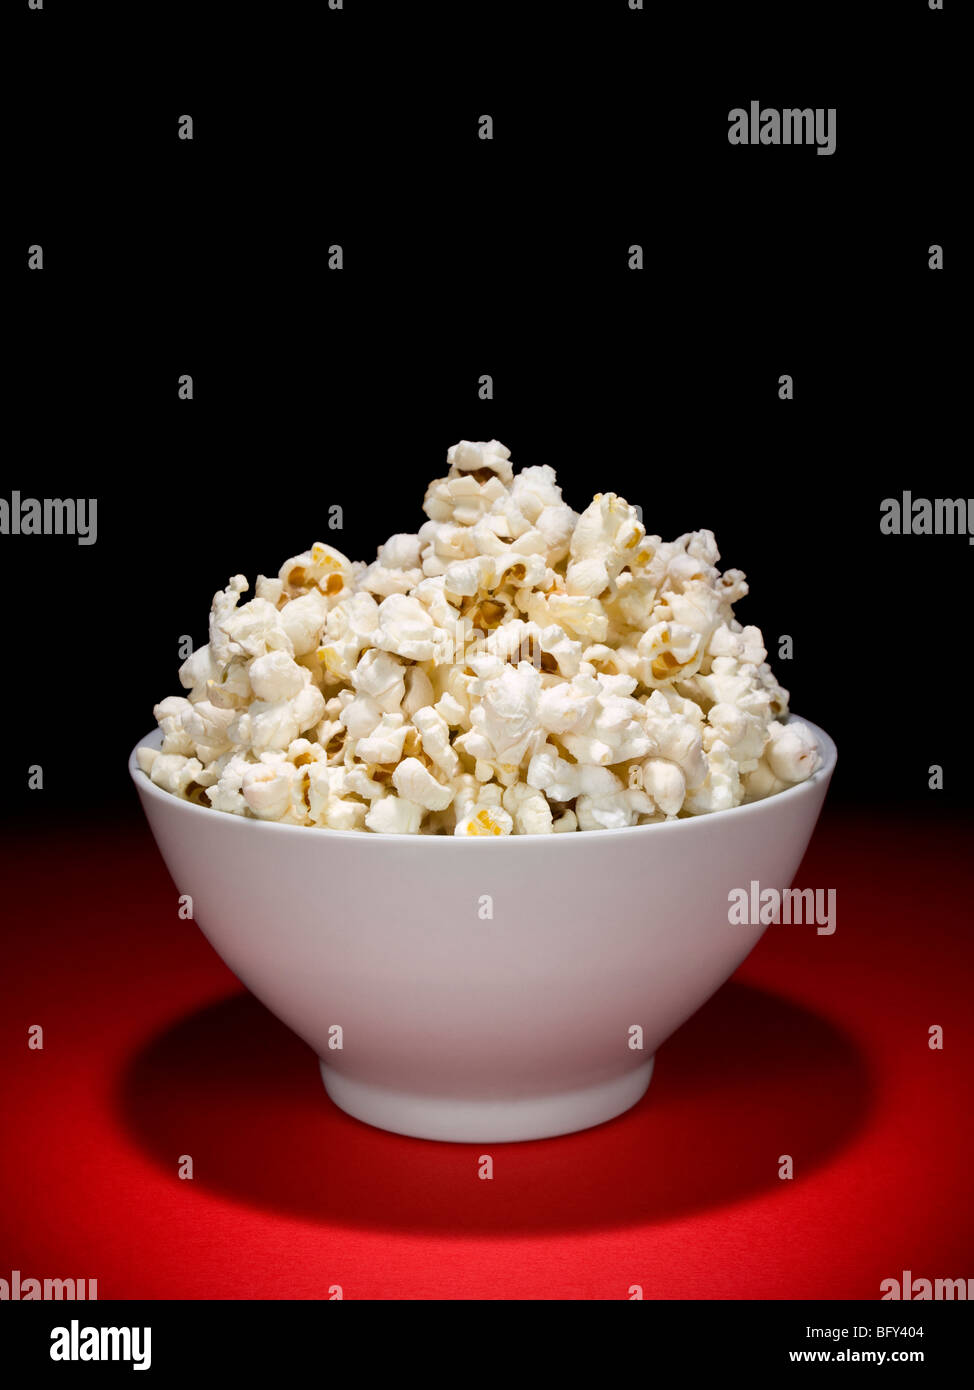 Eine Schüssel voll Popcorn in den Blickpunkt. Stockfoto